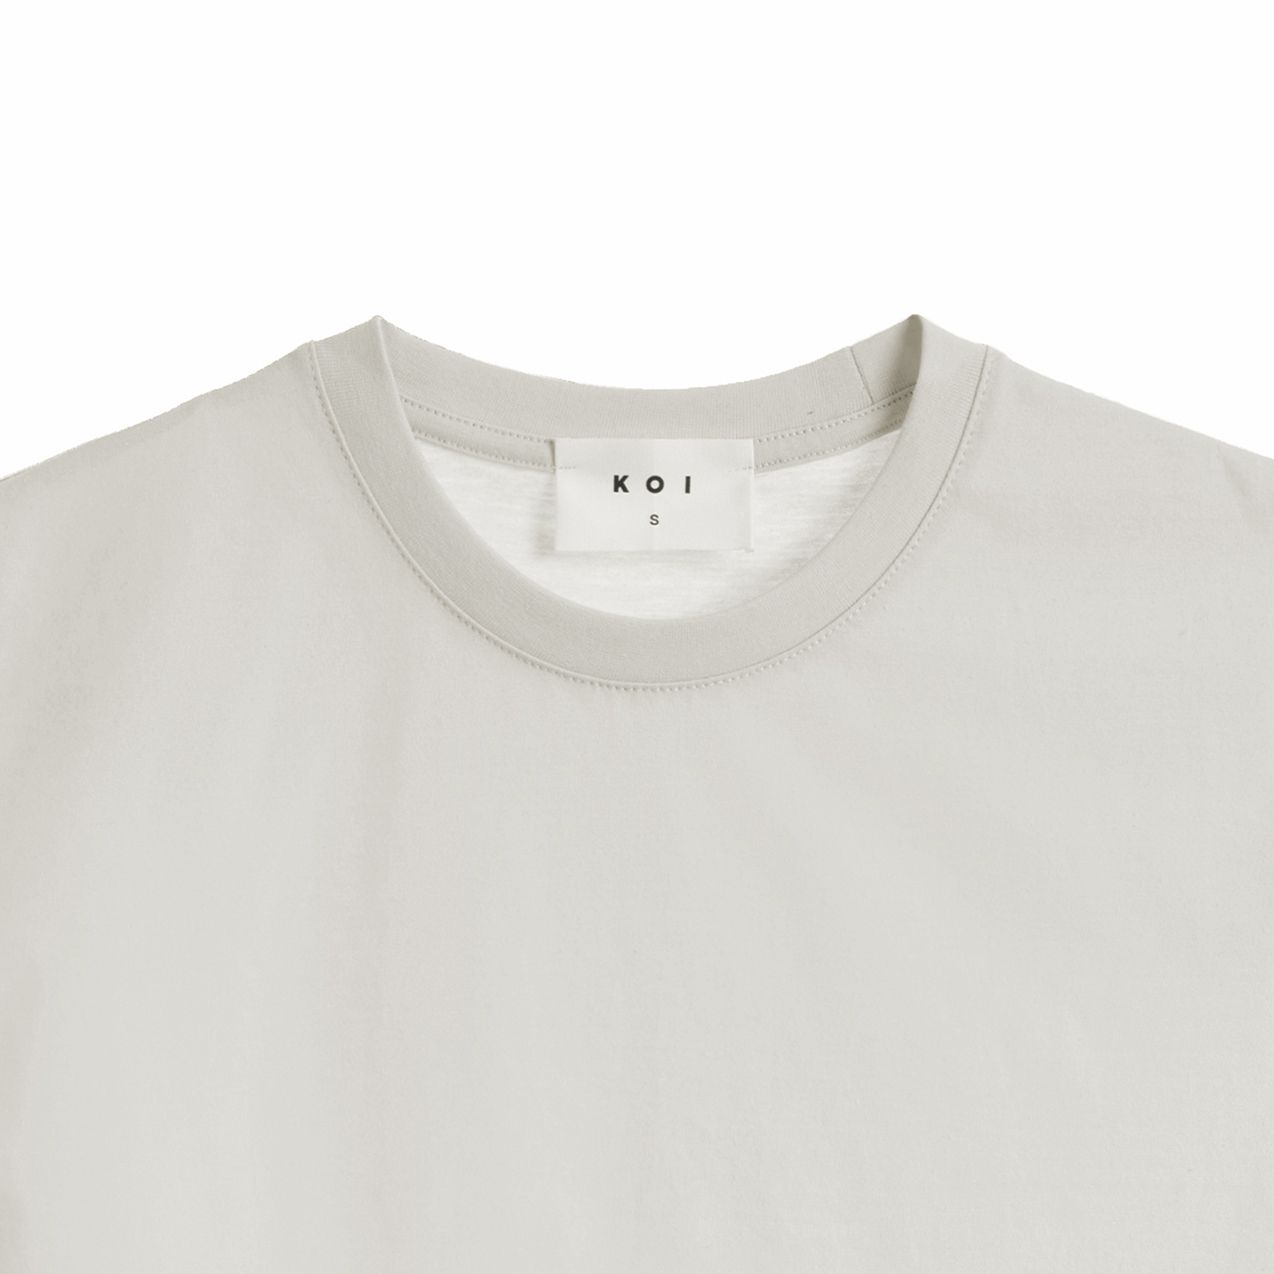 تی شرت آستین کوتاه زنانه کوی مدل هی گرل رنگ سفید -  - 2